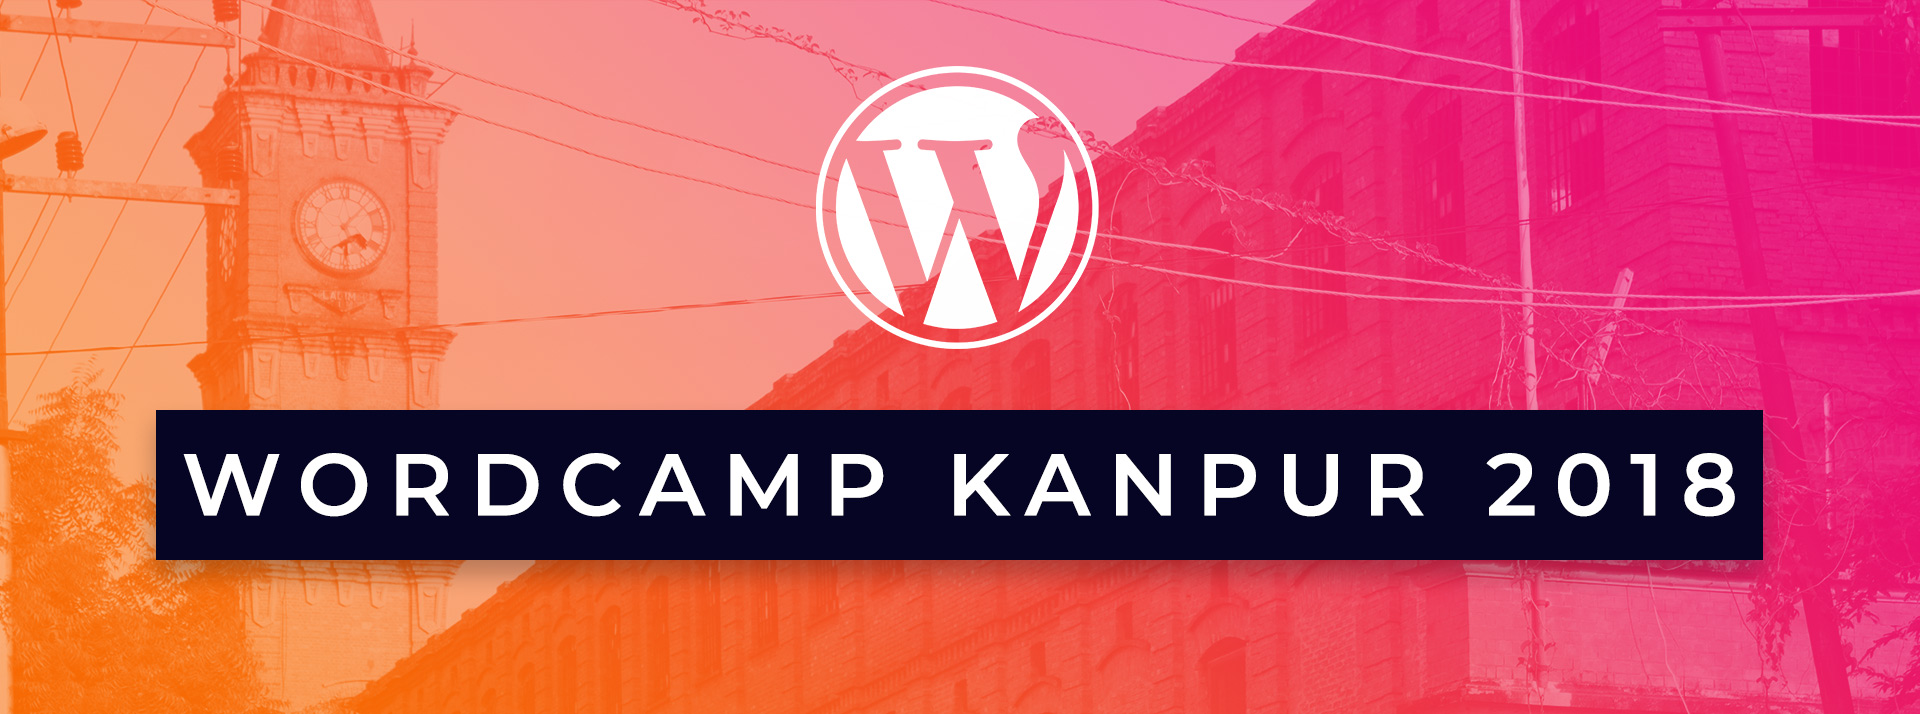 WordCamp Kanpur 2018